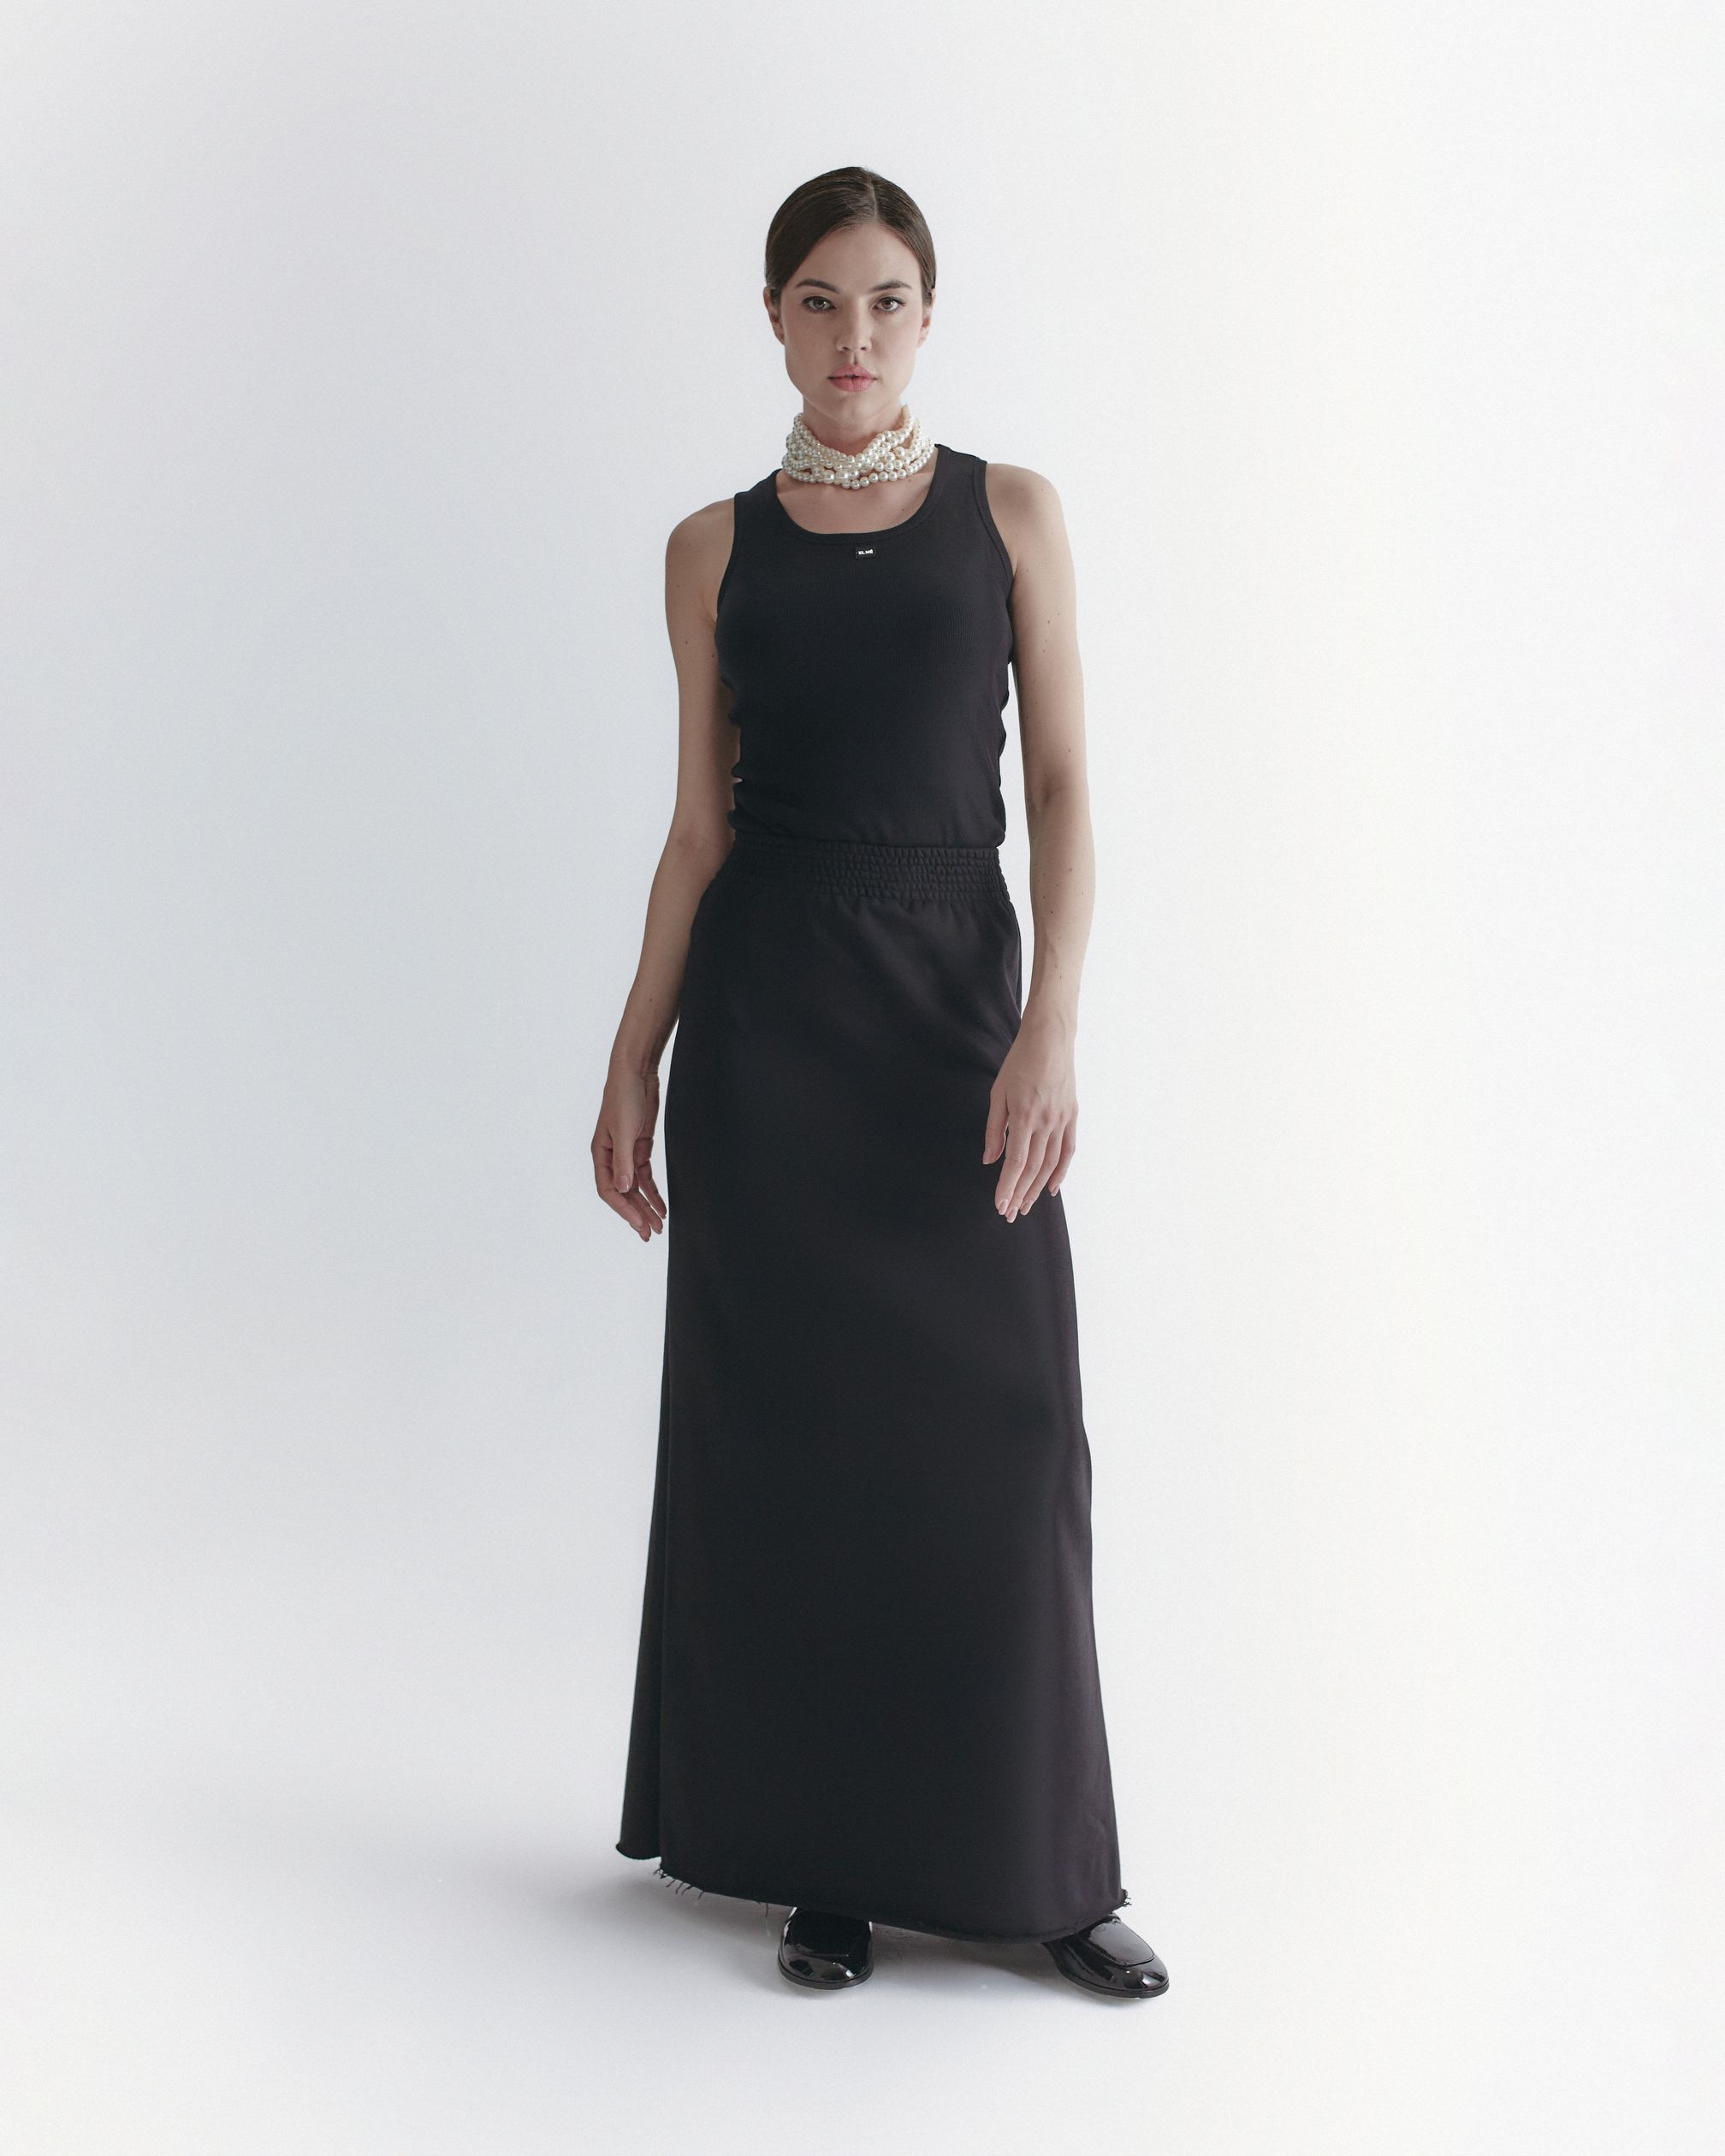 Черная юбка из футера от бренда одежды ELME в Москве. Шоу рум в ГУМ (bosco)